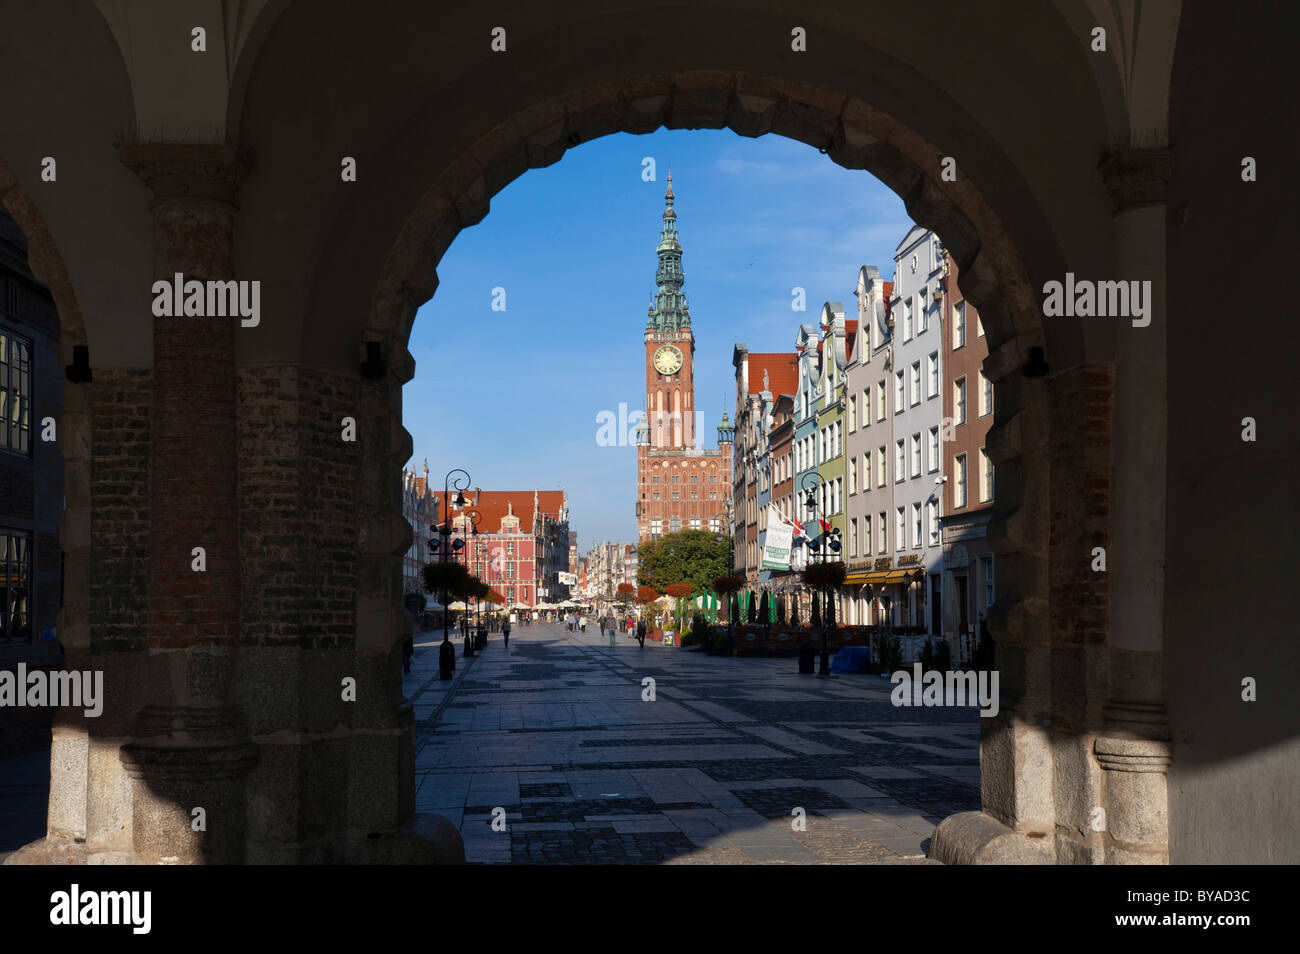 The Main Town Hall, Ratusz Glownego Miasta, on Long Market or Dlugi Targ, G&#322;ówne Miasto district, Gdansk, Pomerania, Poland Stock Photo